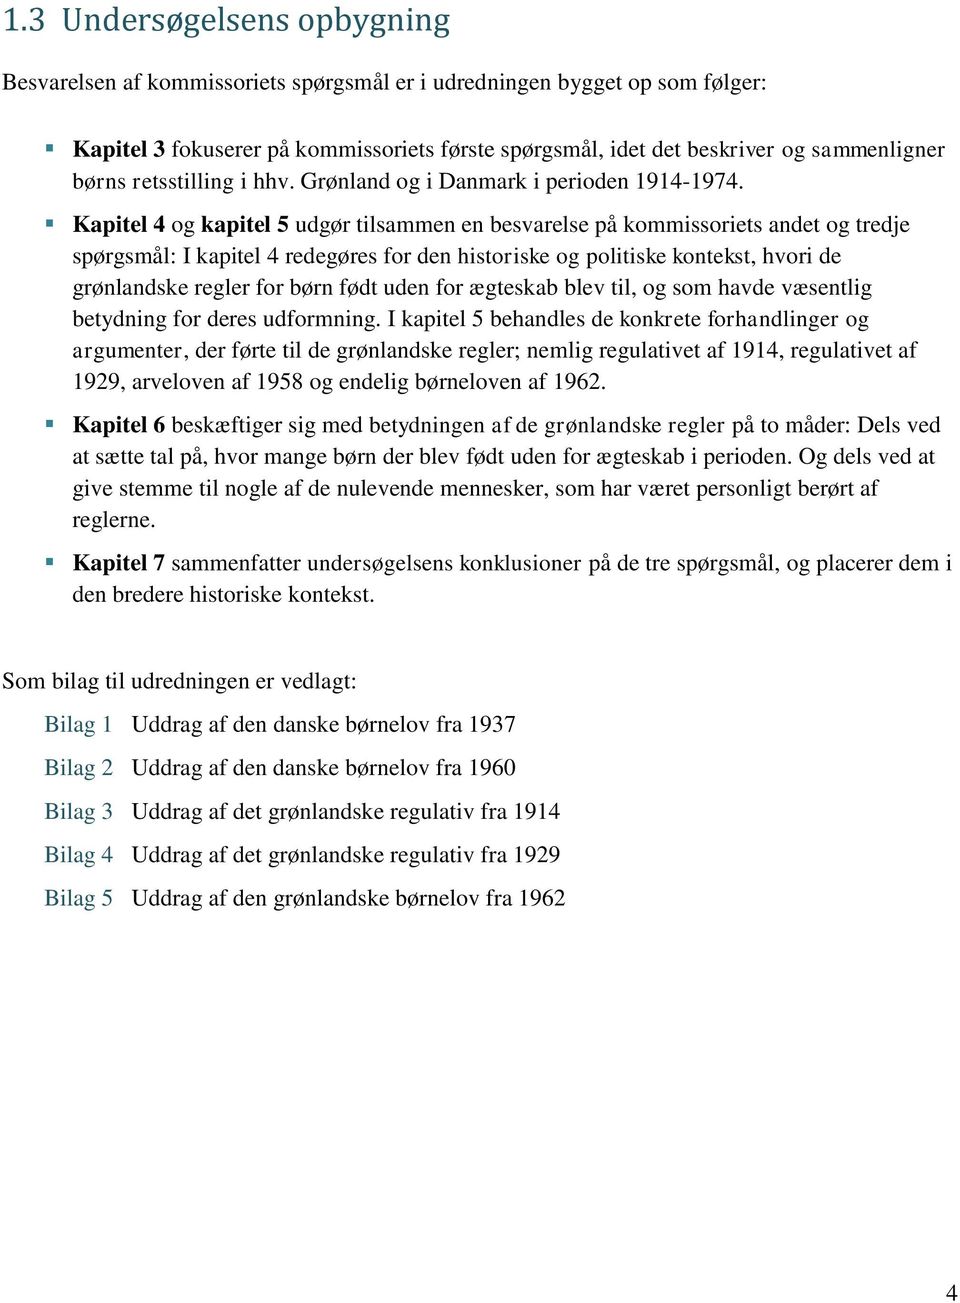 Kapitel 4 og kapitel 5 udgør tilsammen en besvarelse på kommissoriets andet og tredje spørgsmål: I kapitel 4 redegøres for den historiske og politiske kontekst, hvori de grønlandske regler for børn